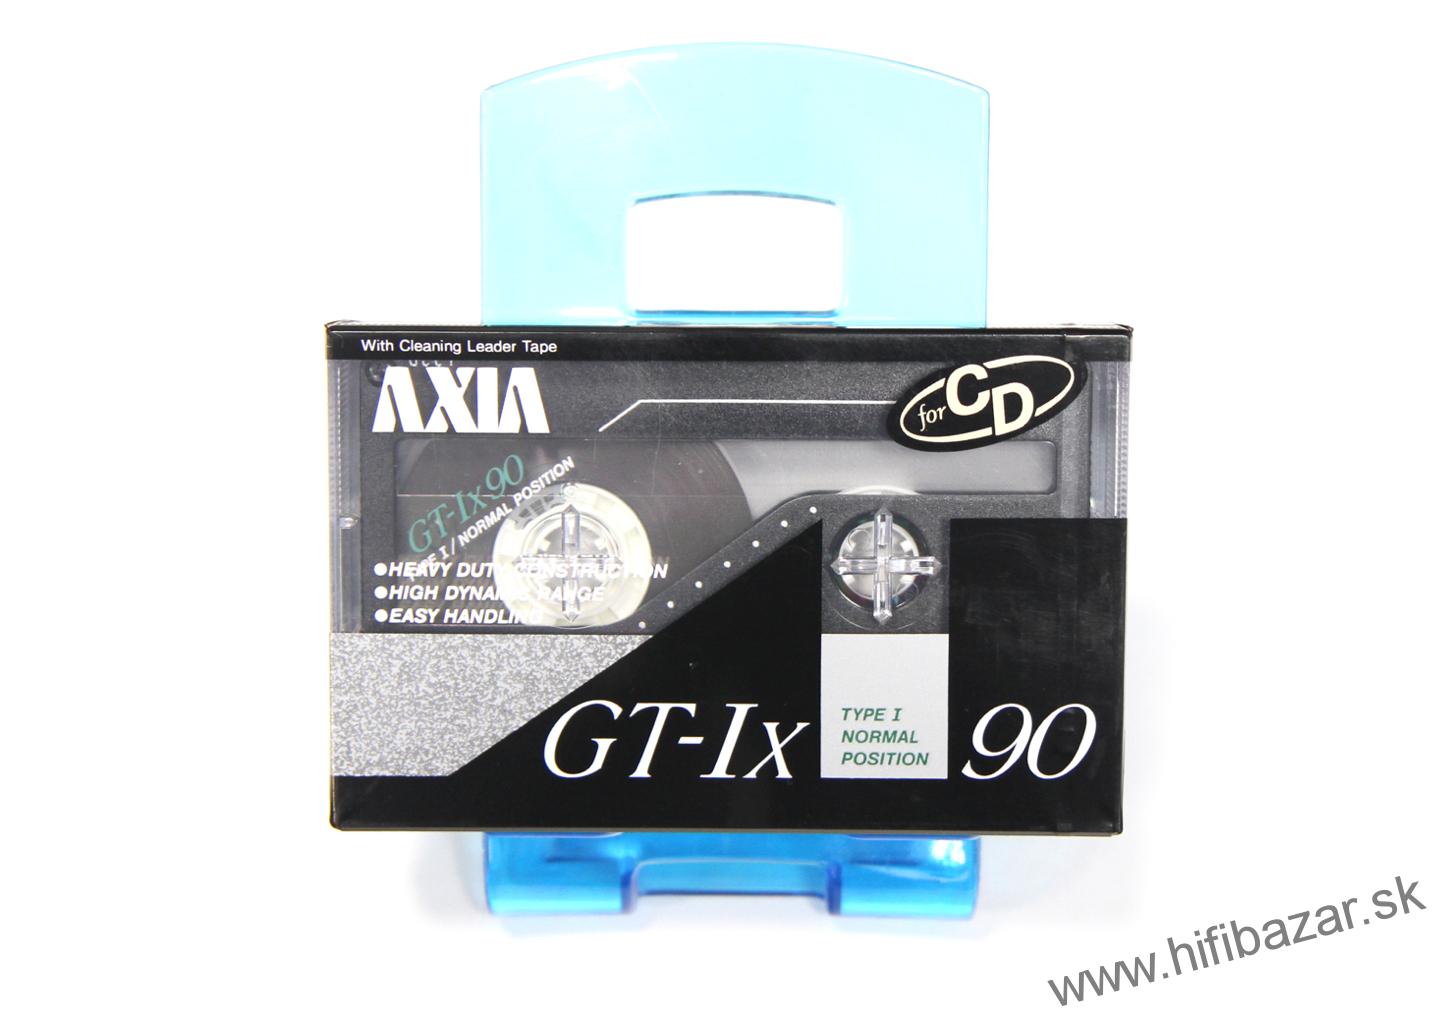 AXIA GT-Ix90 Japan